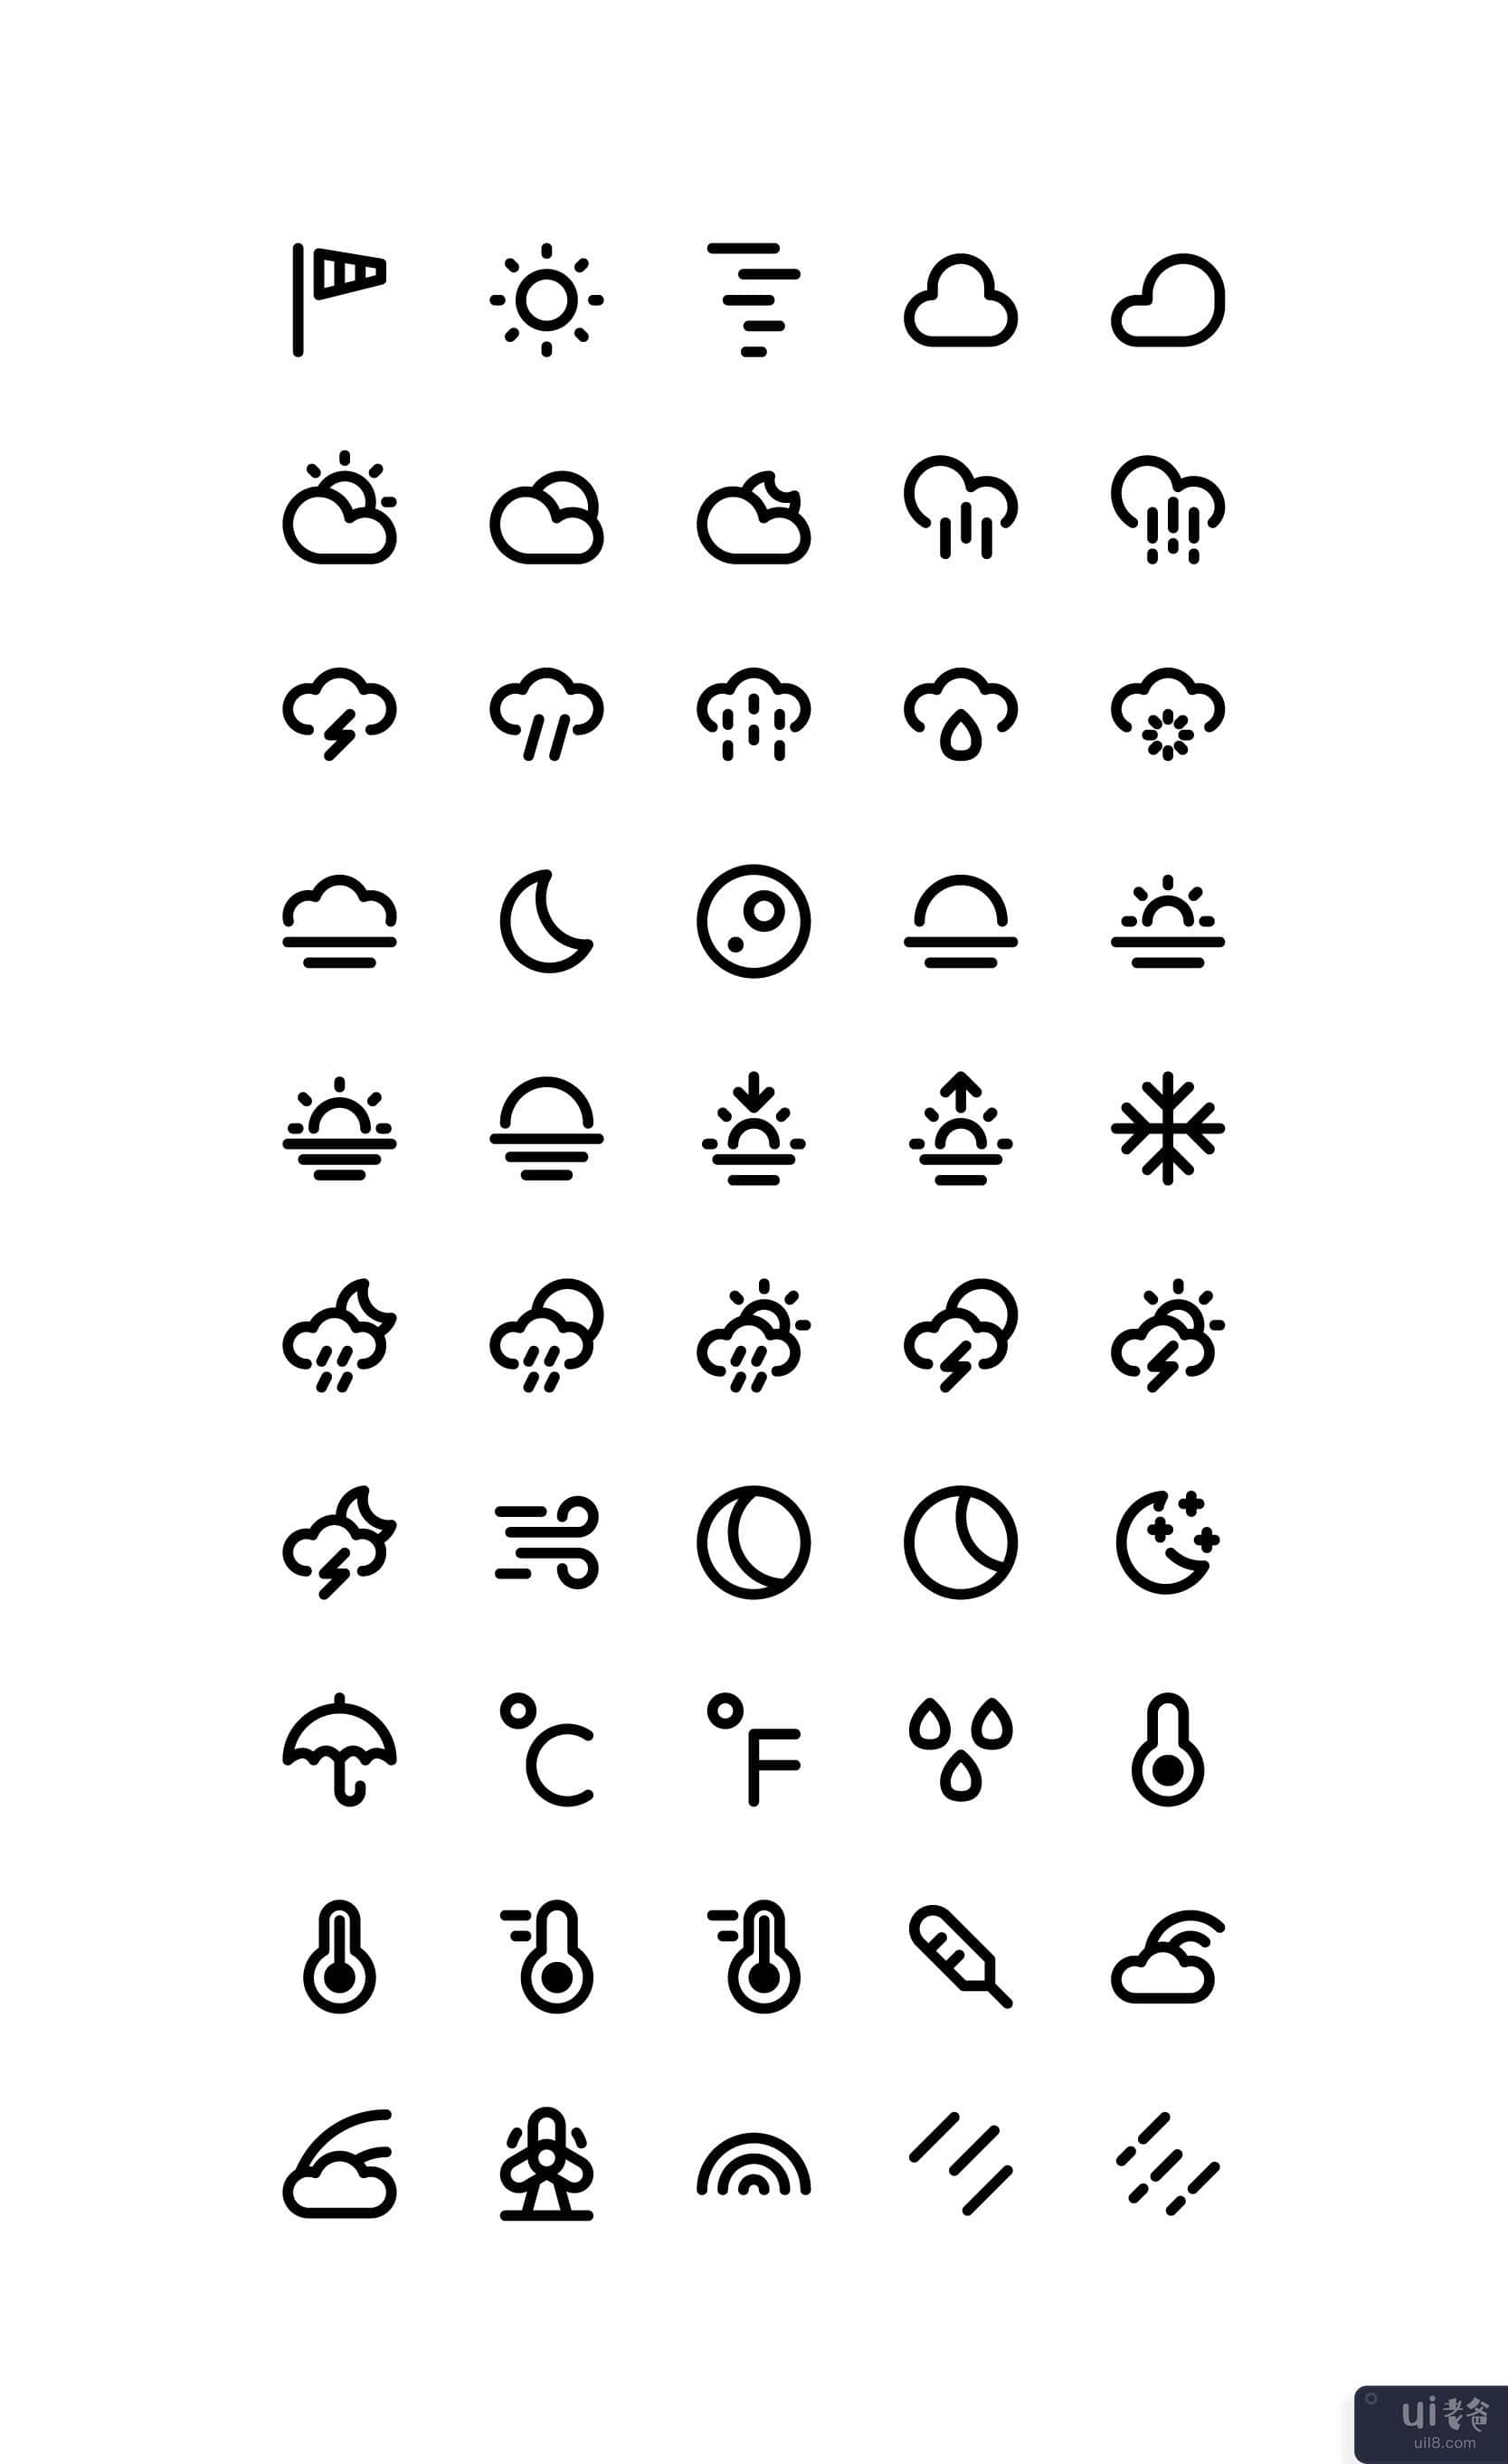 天气图标集矢量(Weather icon set vector)插图